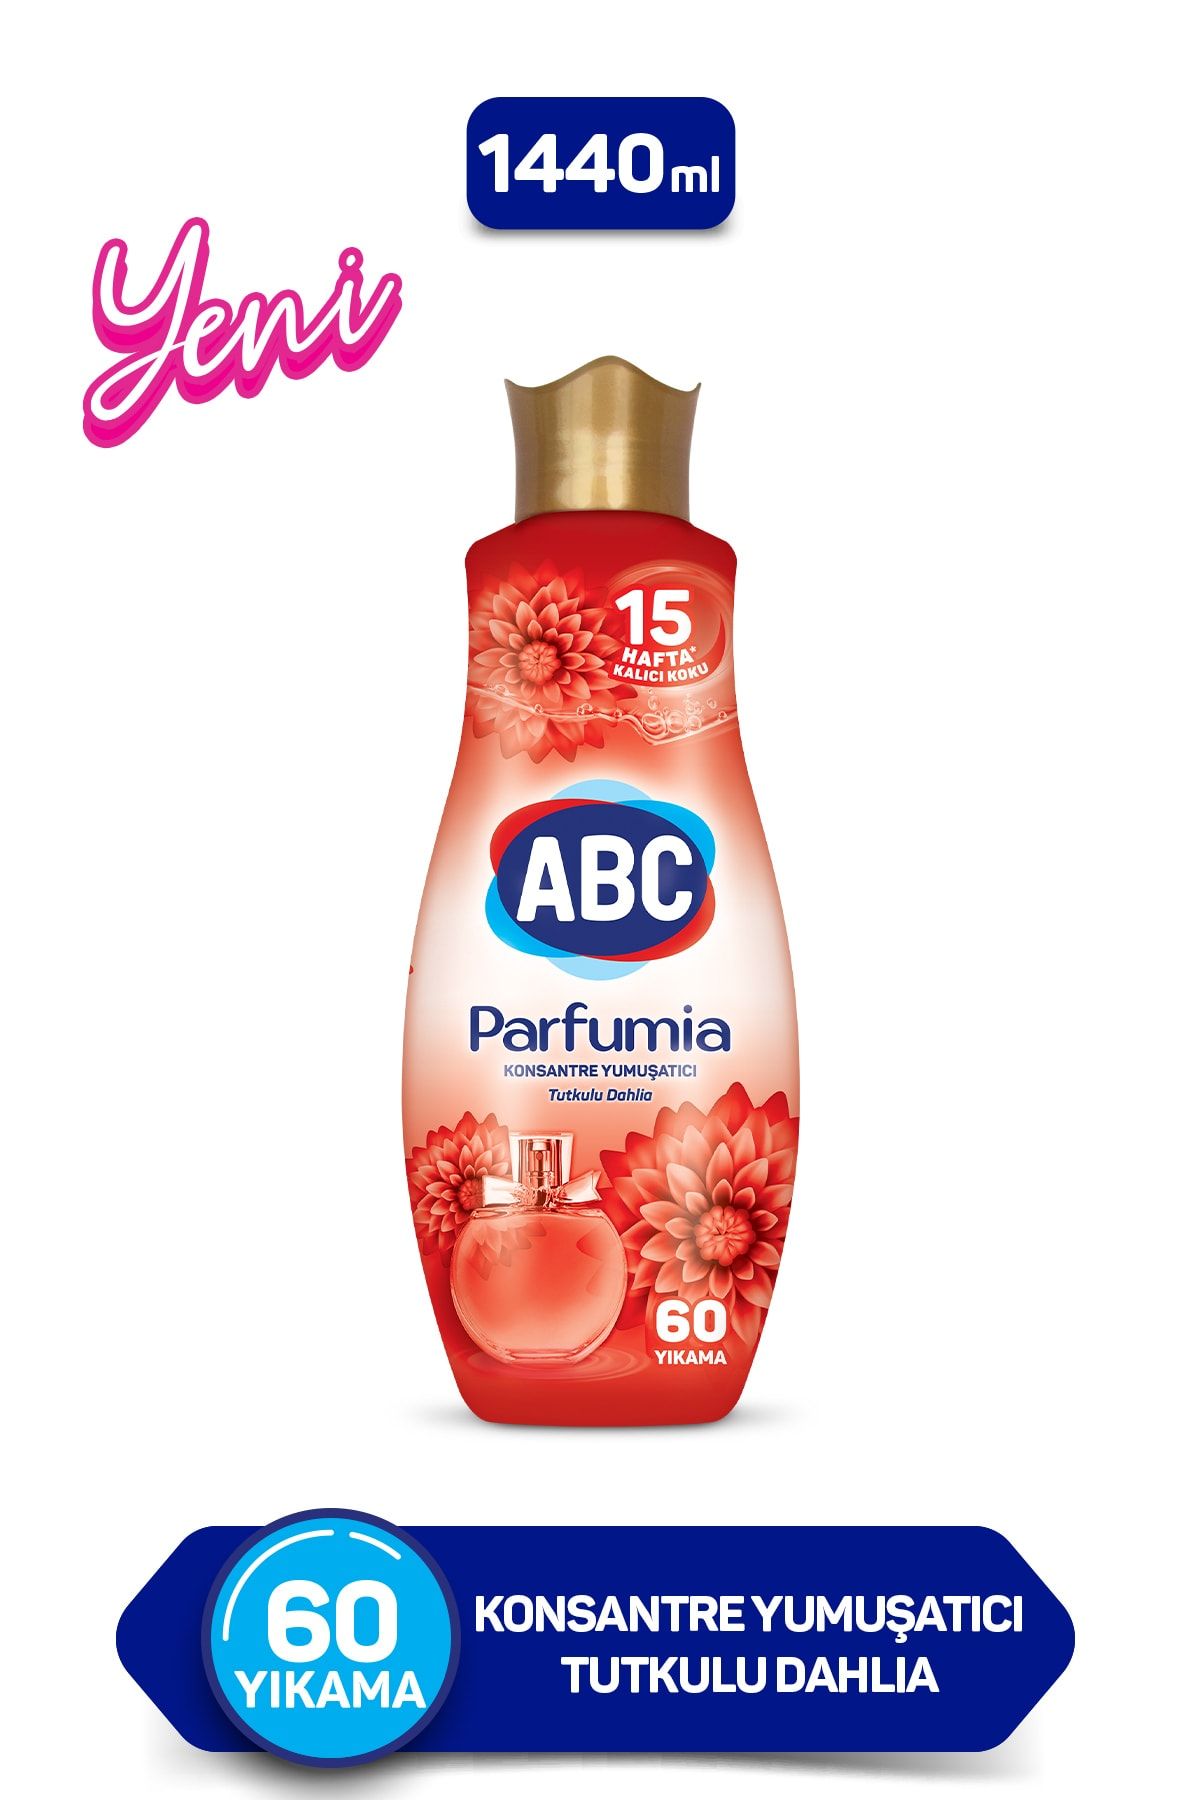 ABC Parfumia Konsantre Yumuşatıcı Tutkulu Dahlia 60 Yıkama 1440Ml